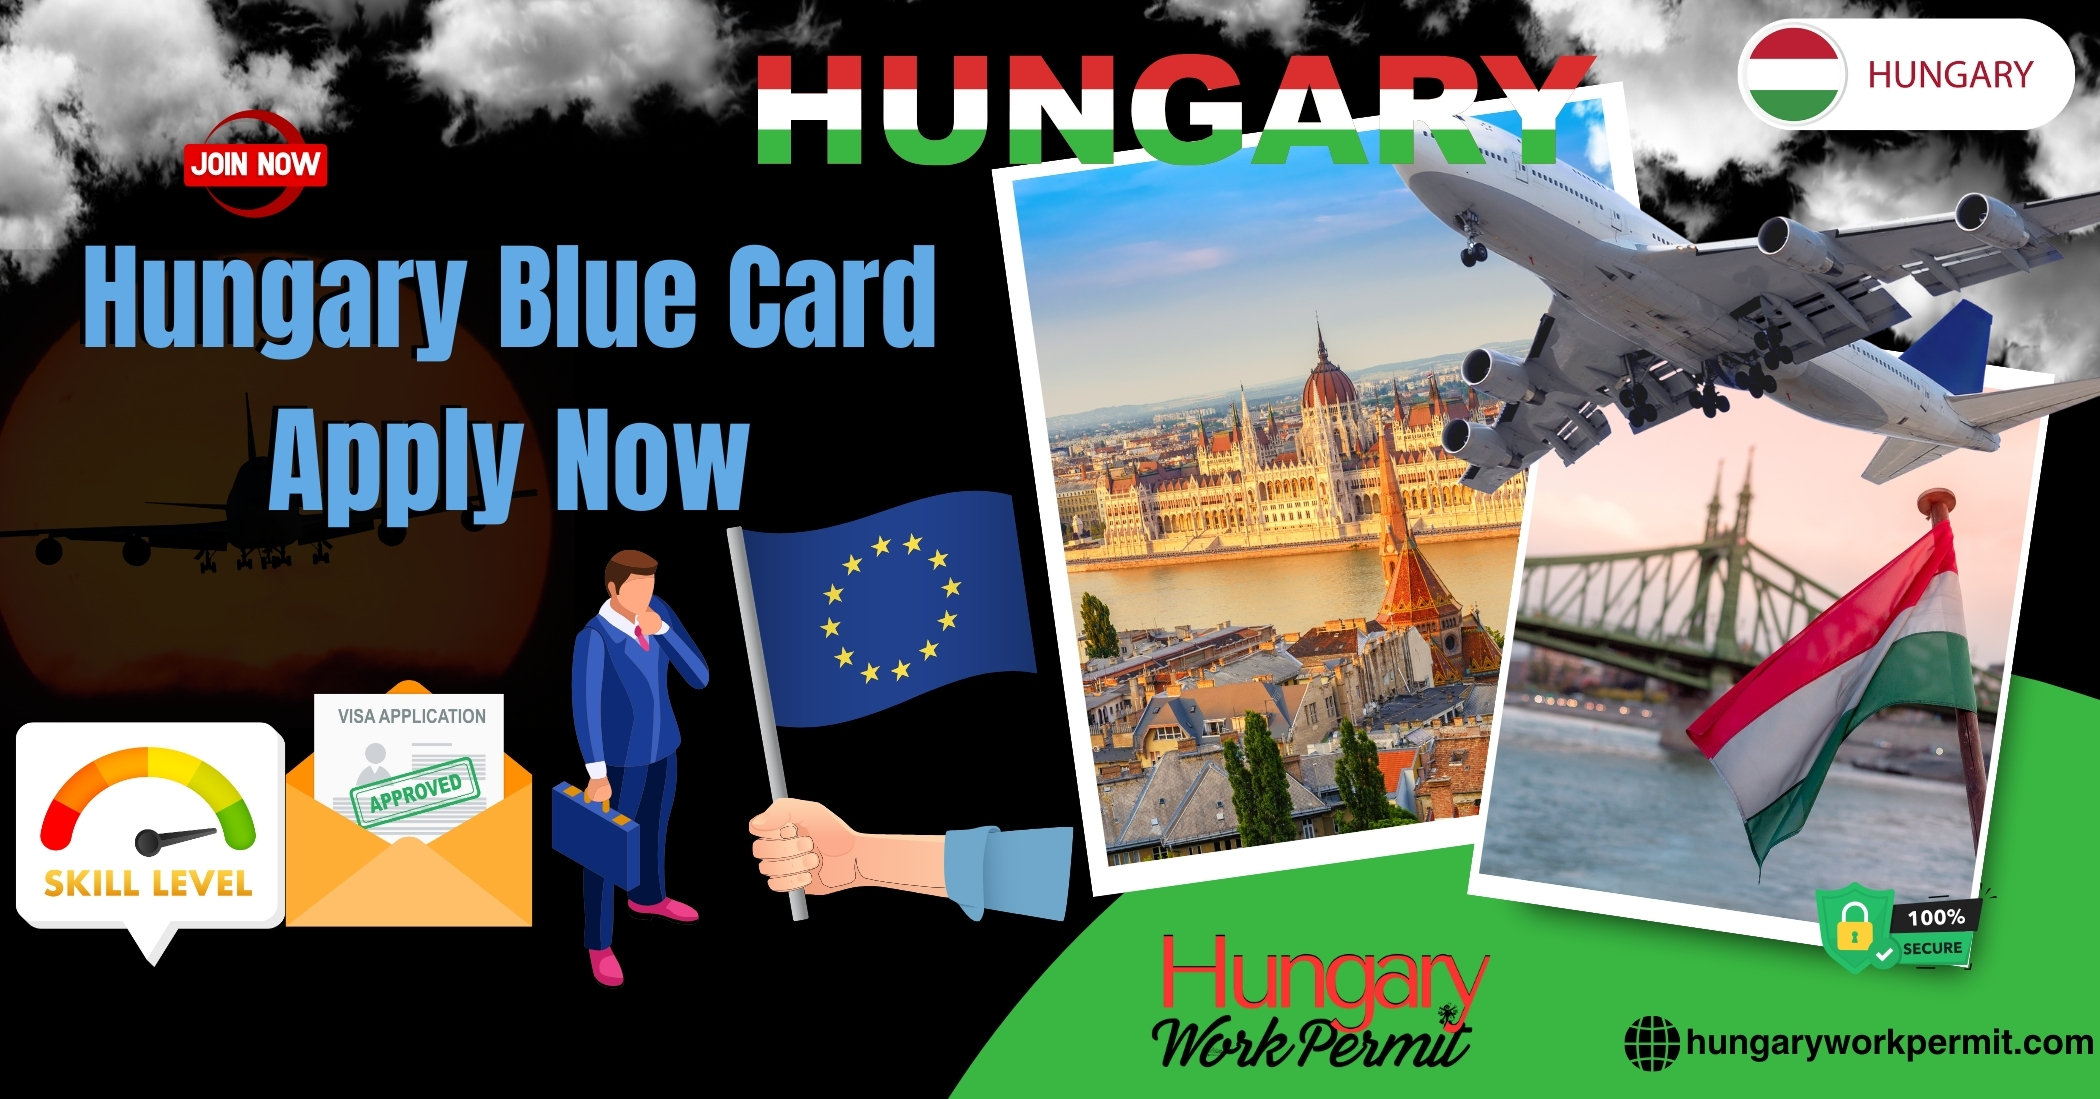 How to Apply for a Hungary EU Blue Card Visa?